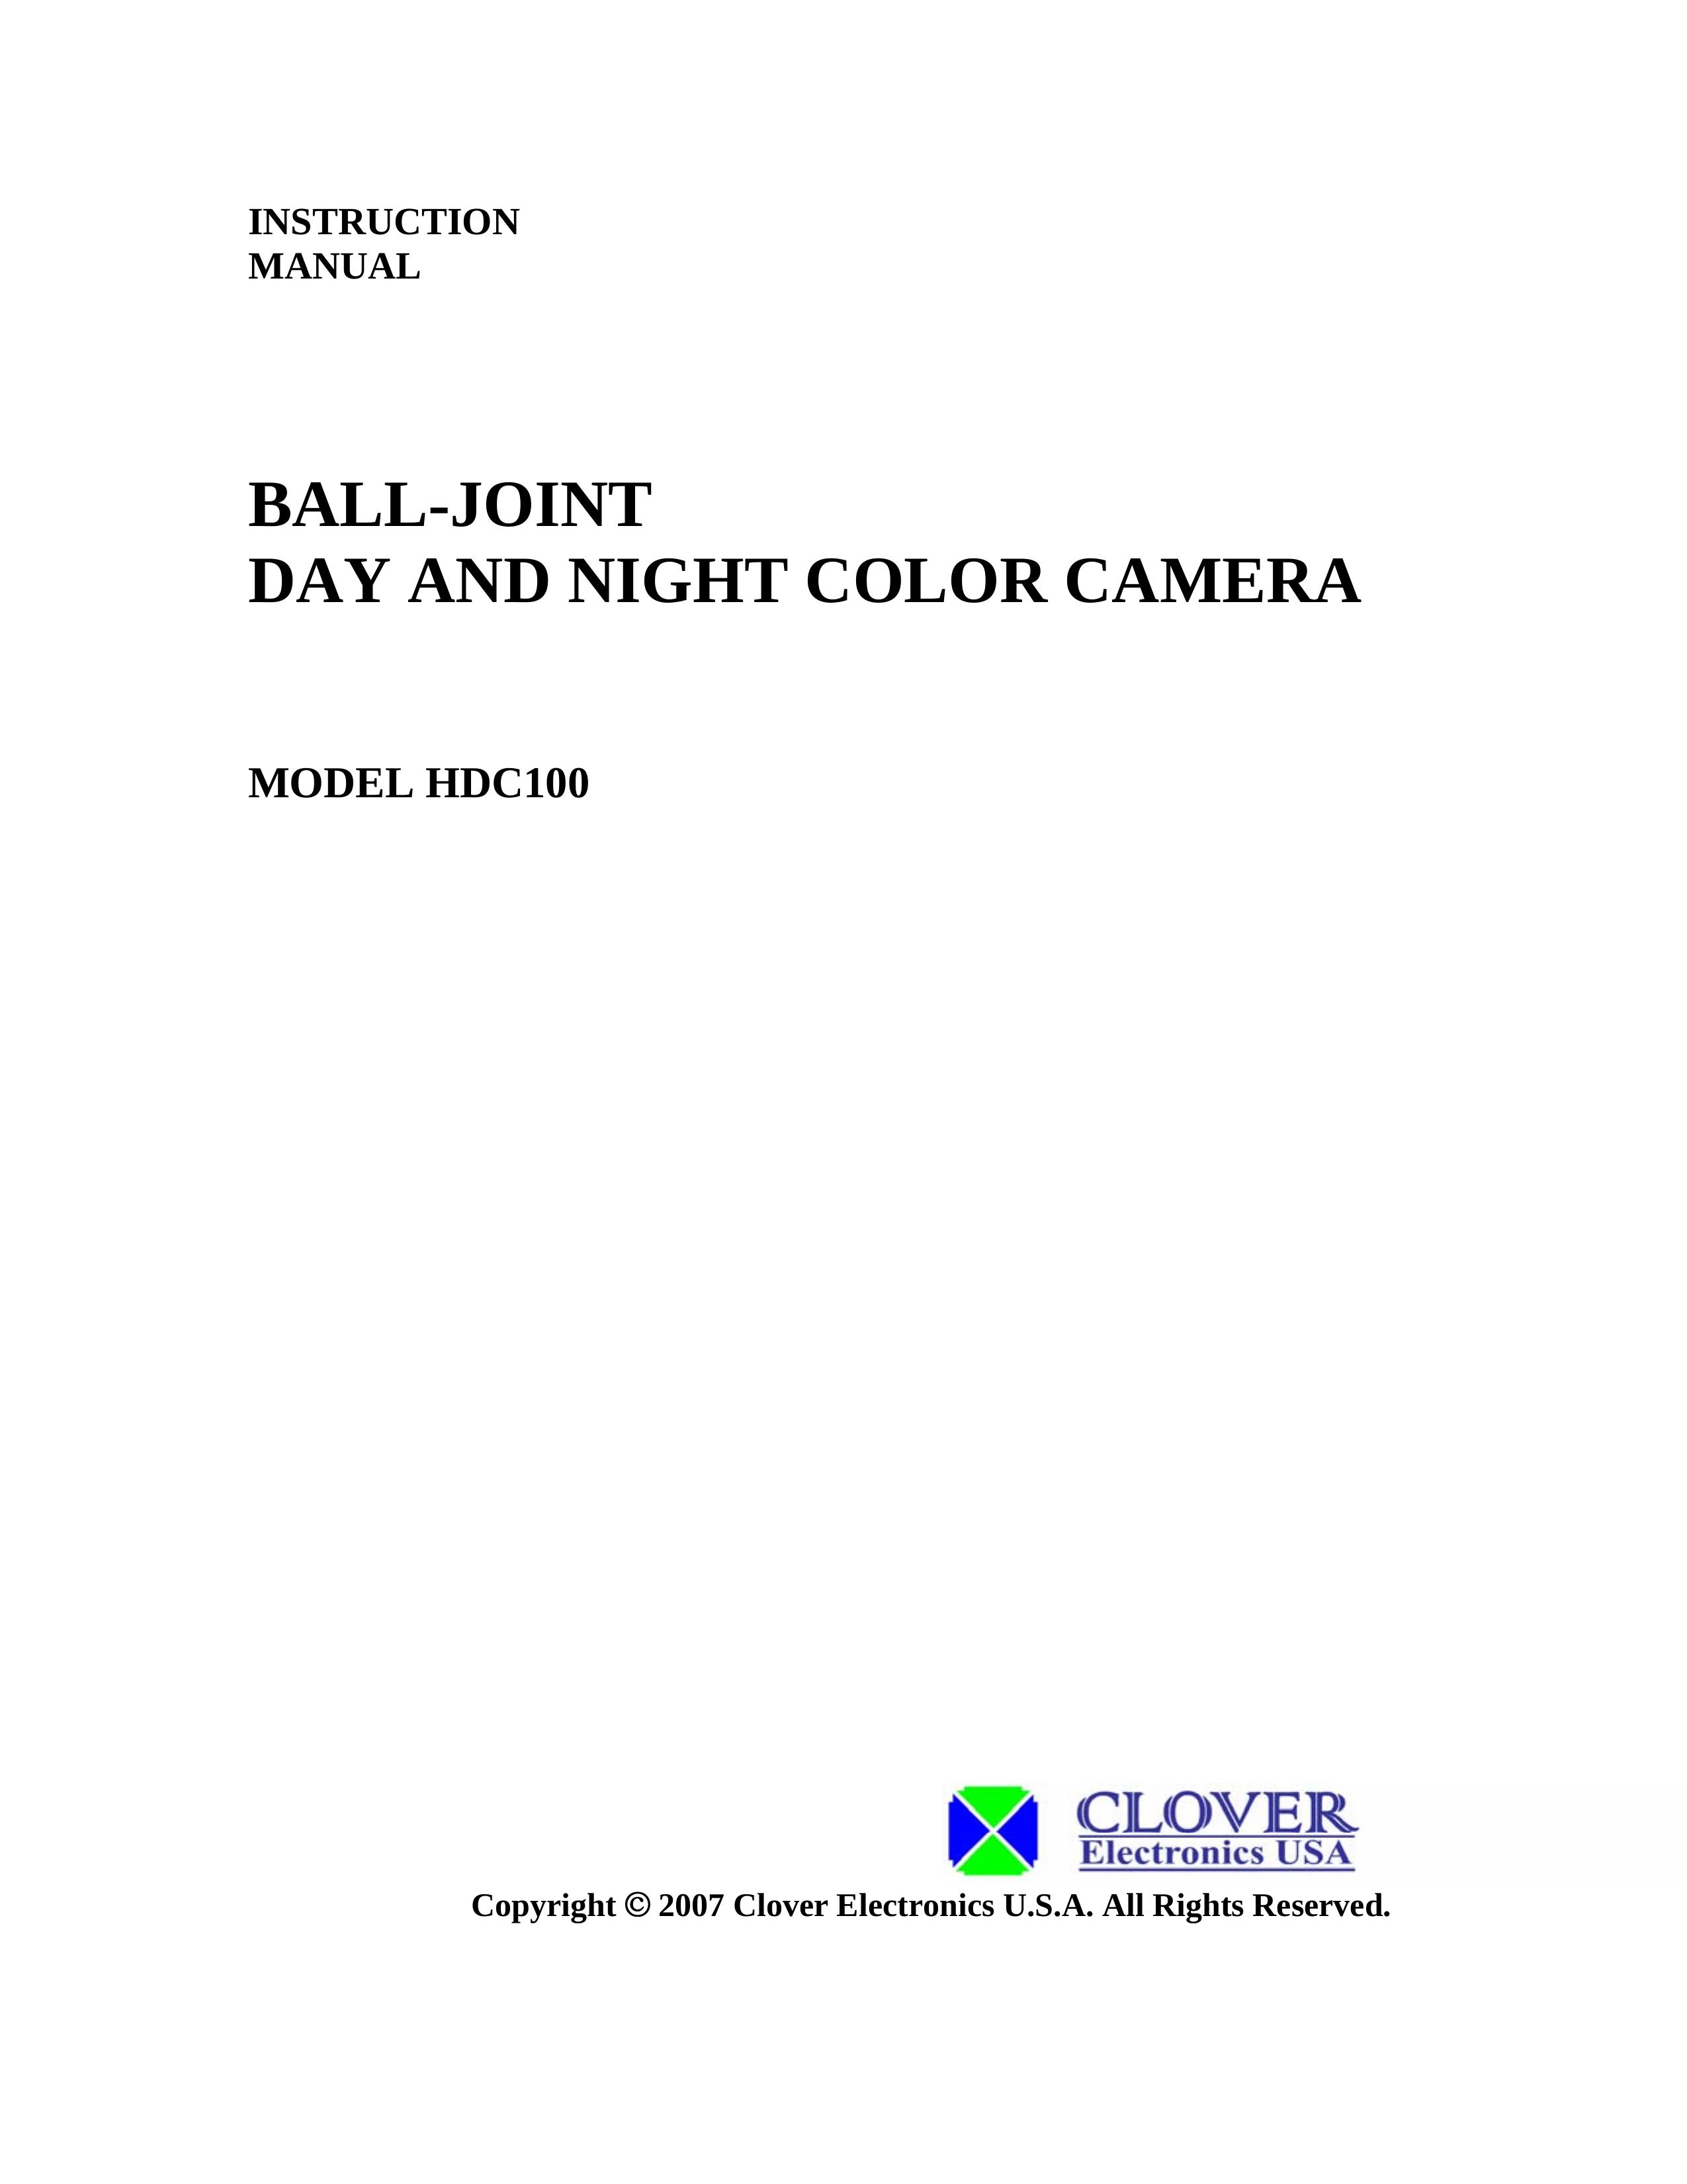 Clover Electronics HDC100 Security Camera User Manual